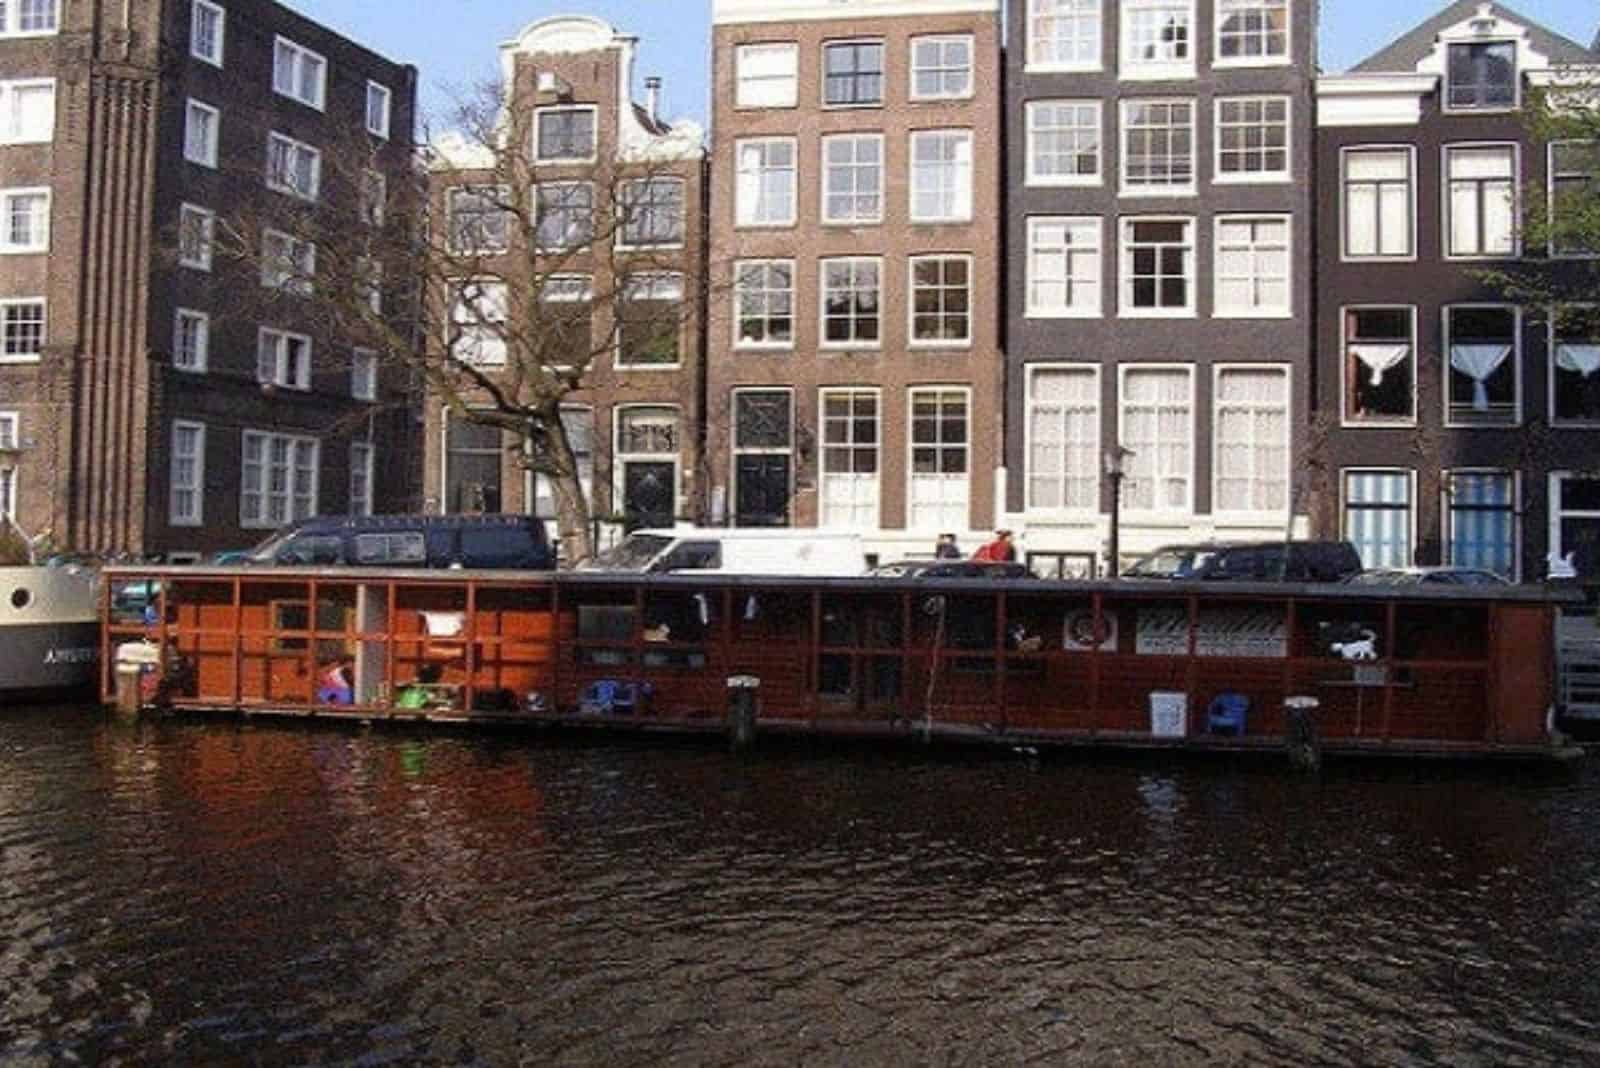 river boat in amsterdamus